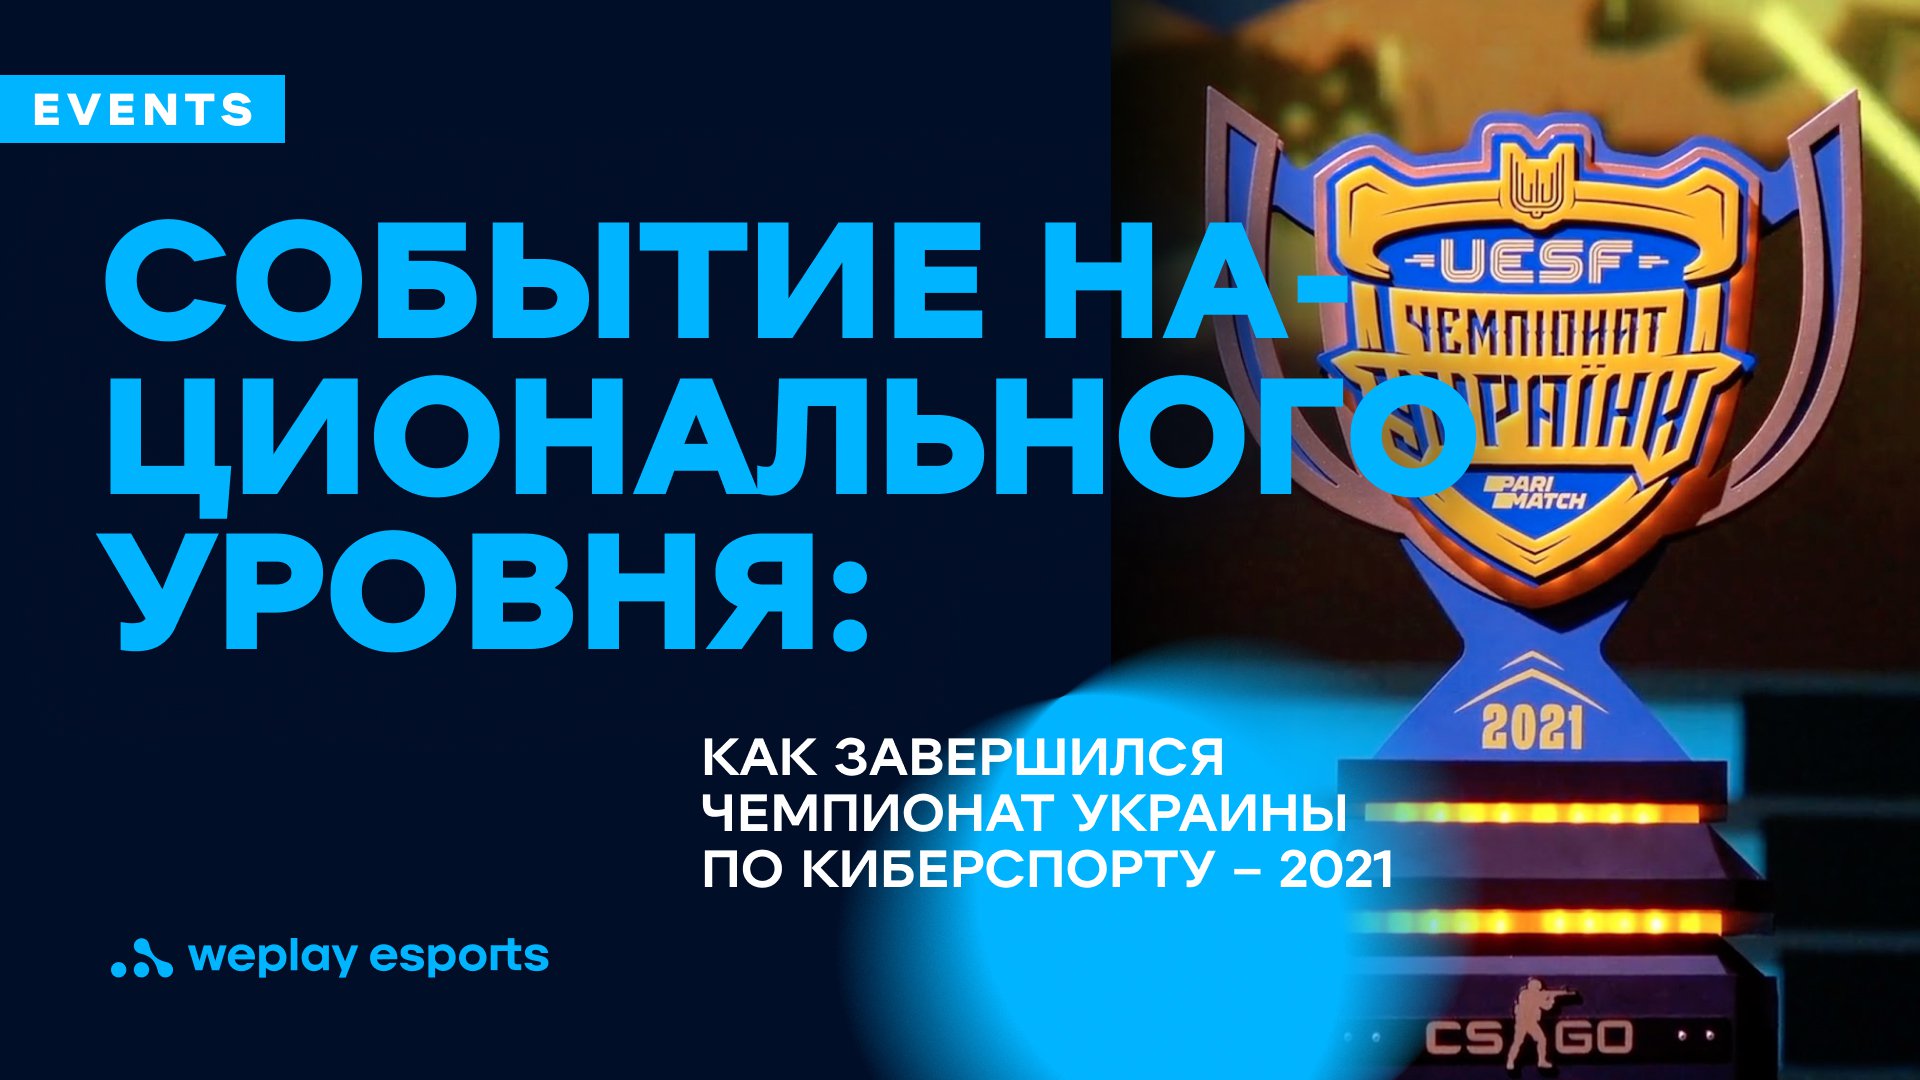 Событие национального уровня: как завершился Чемпионат Украины по киберспорту – 2021. Фото: UESF